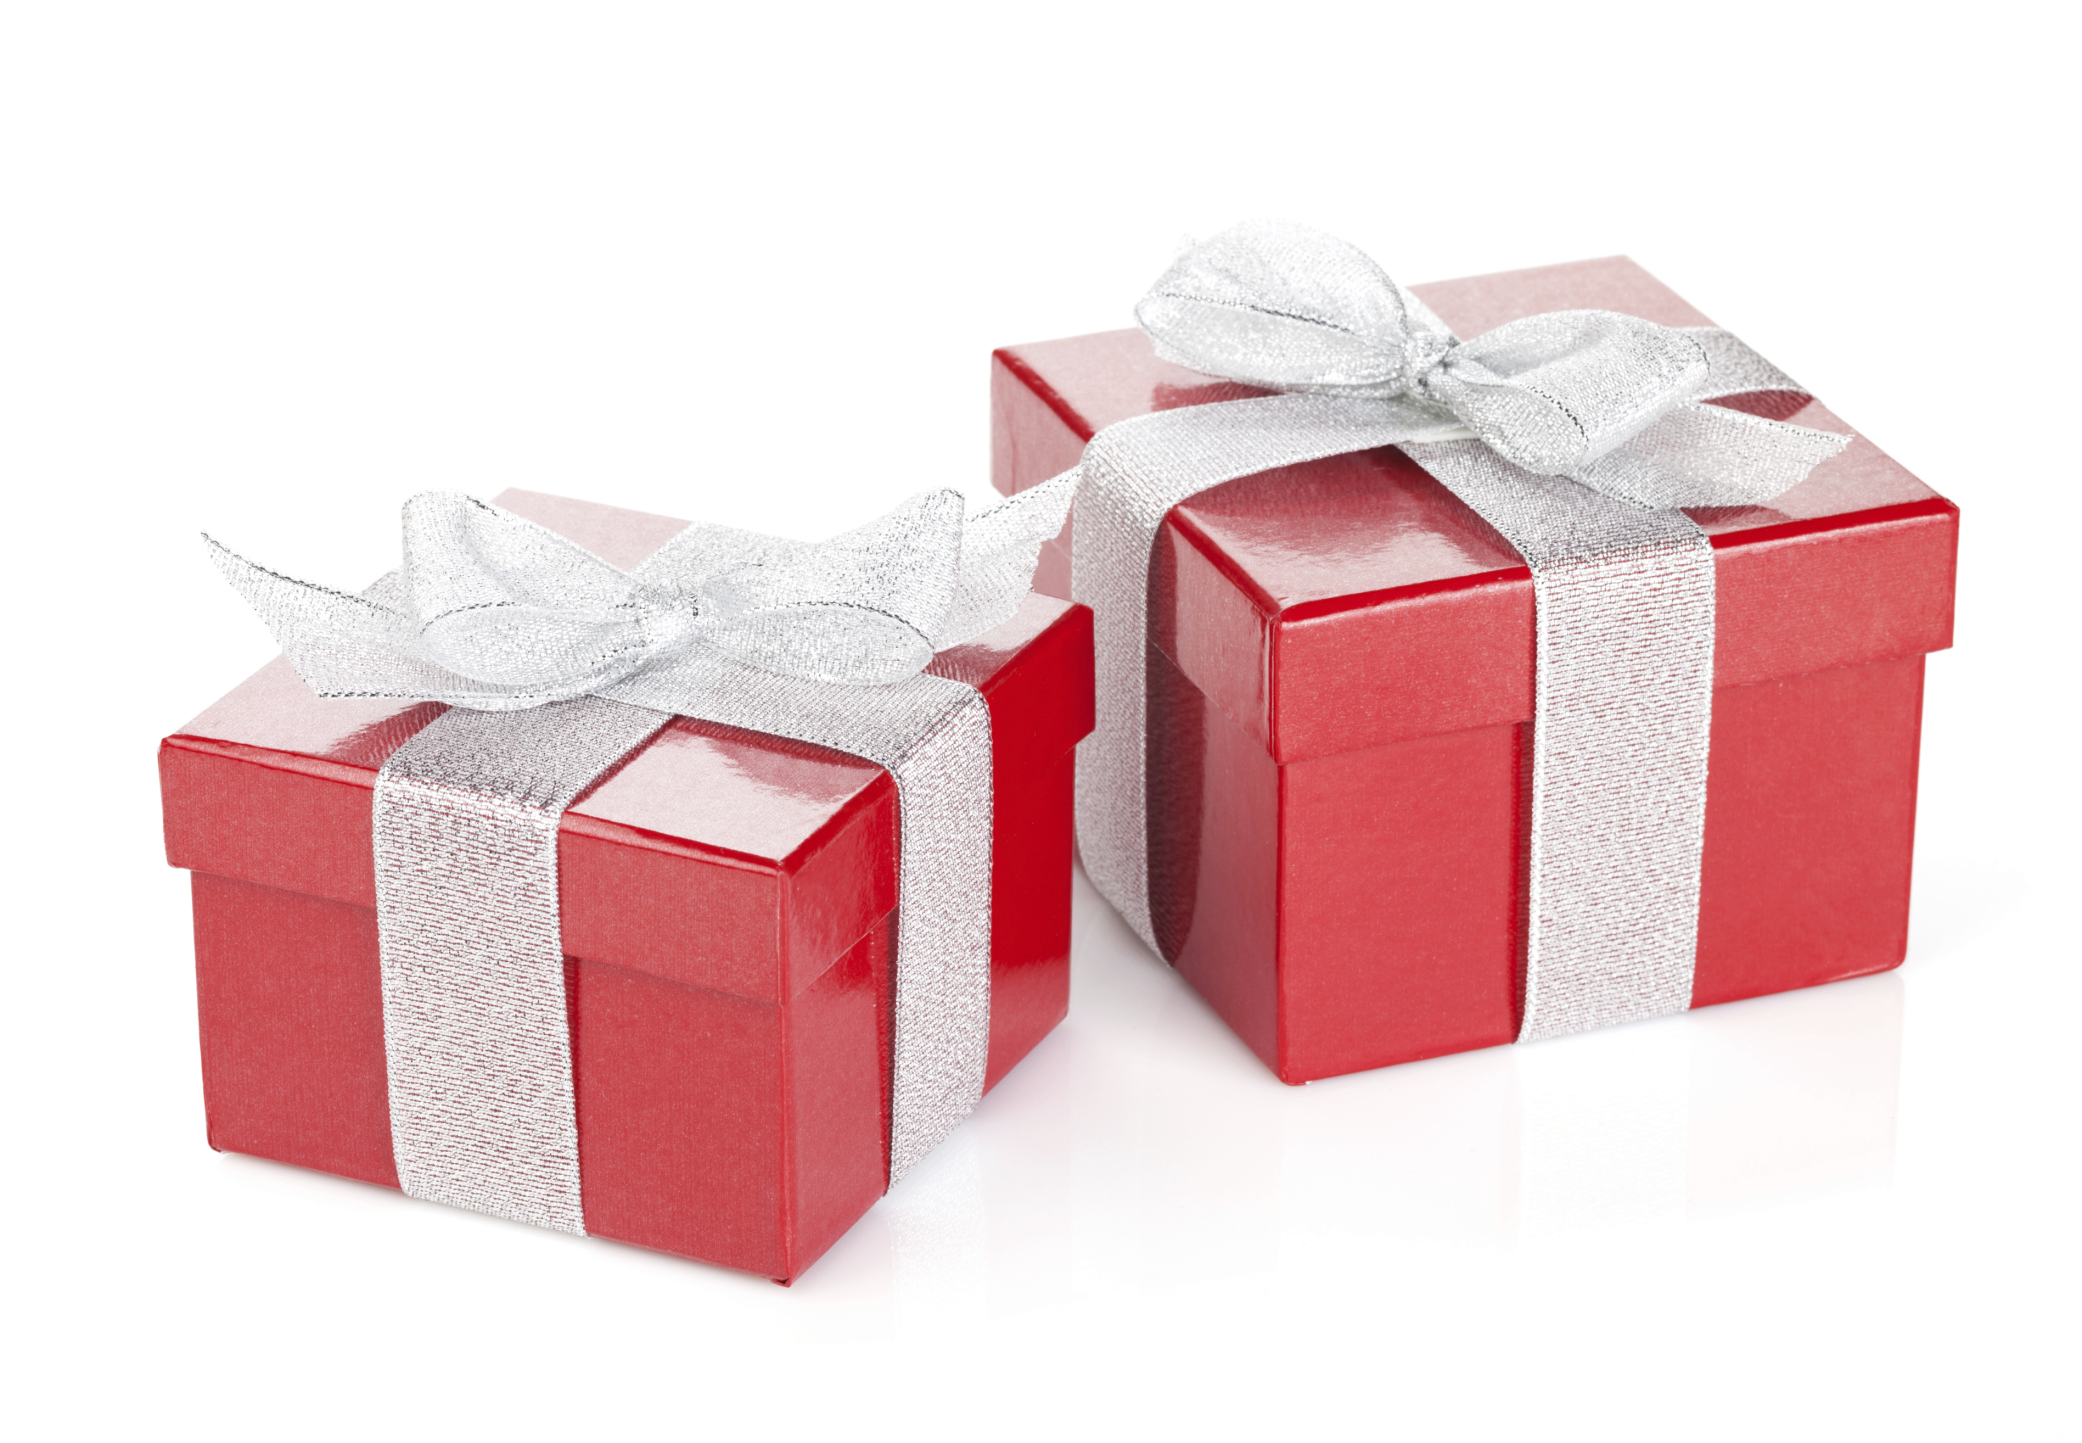 Сюрприз 2 5. Два подарка. Красно серебристый подарок. Две коробки с подарками. 2 Подарка картинка.